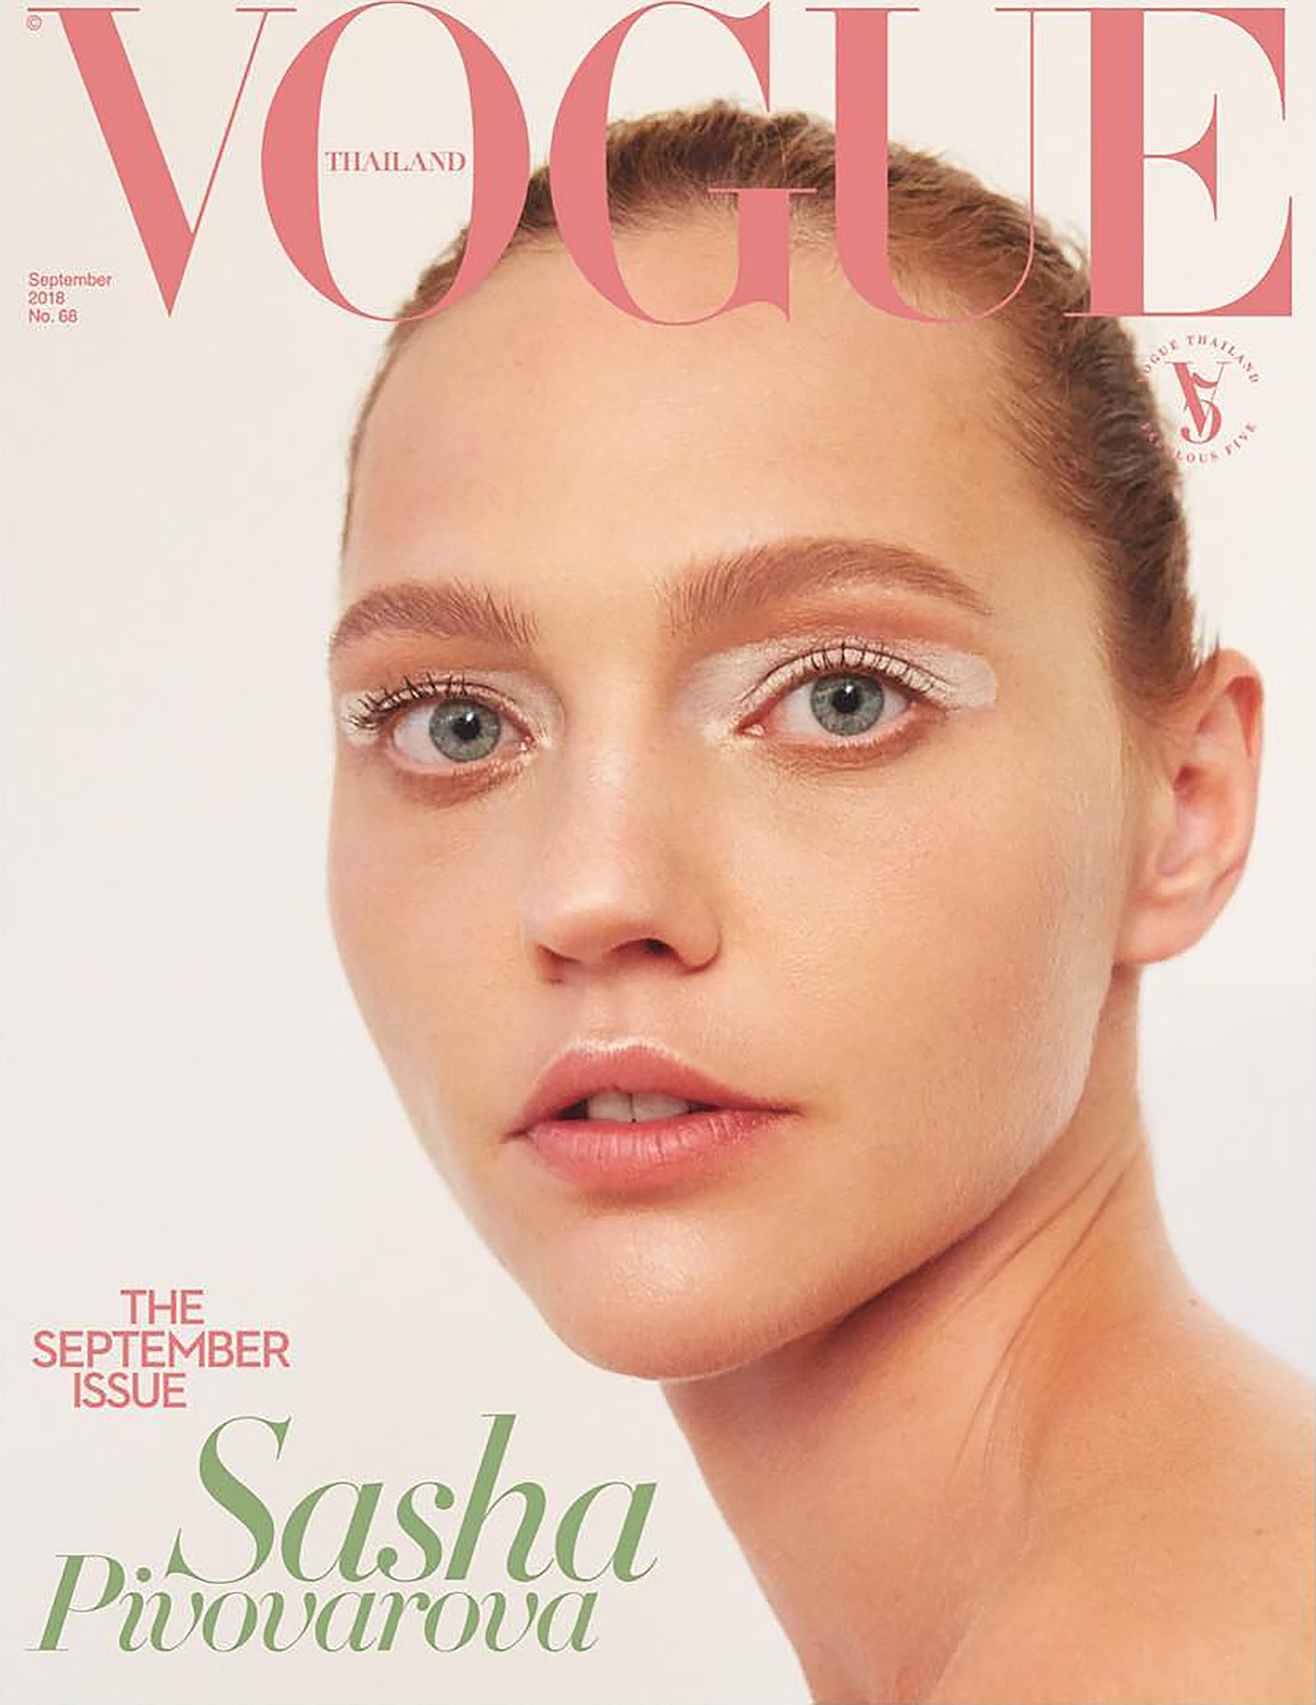 Sasha Pivovarova by Natth Jaturapahu for Vogue Thailand Sept 2018 (4).jpg